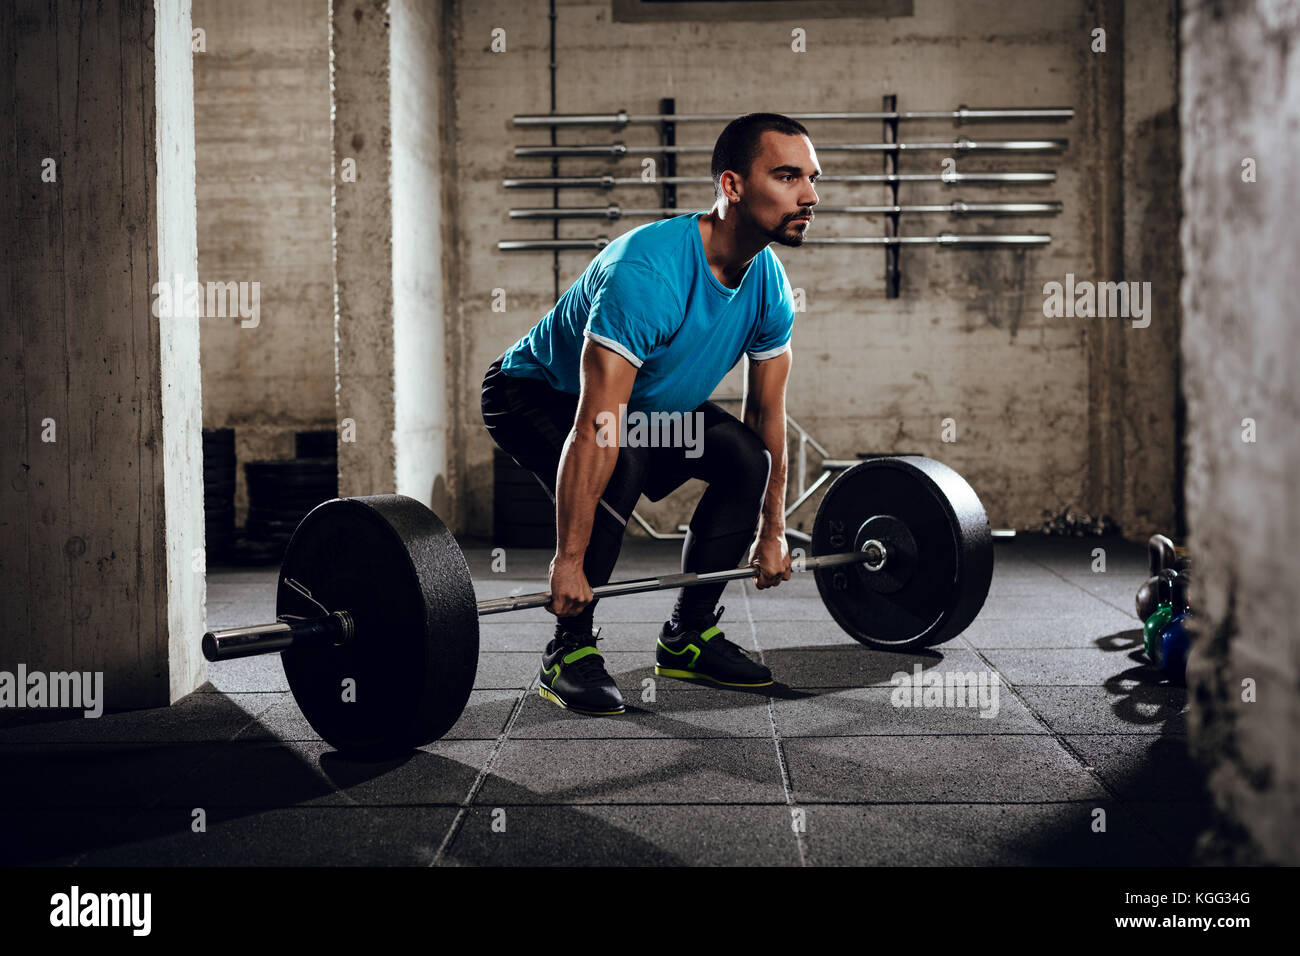 Junge muskulöse Mann bereit, trainieren Sie im Fitnessraum zu deadlift. Stockfoto